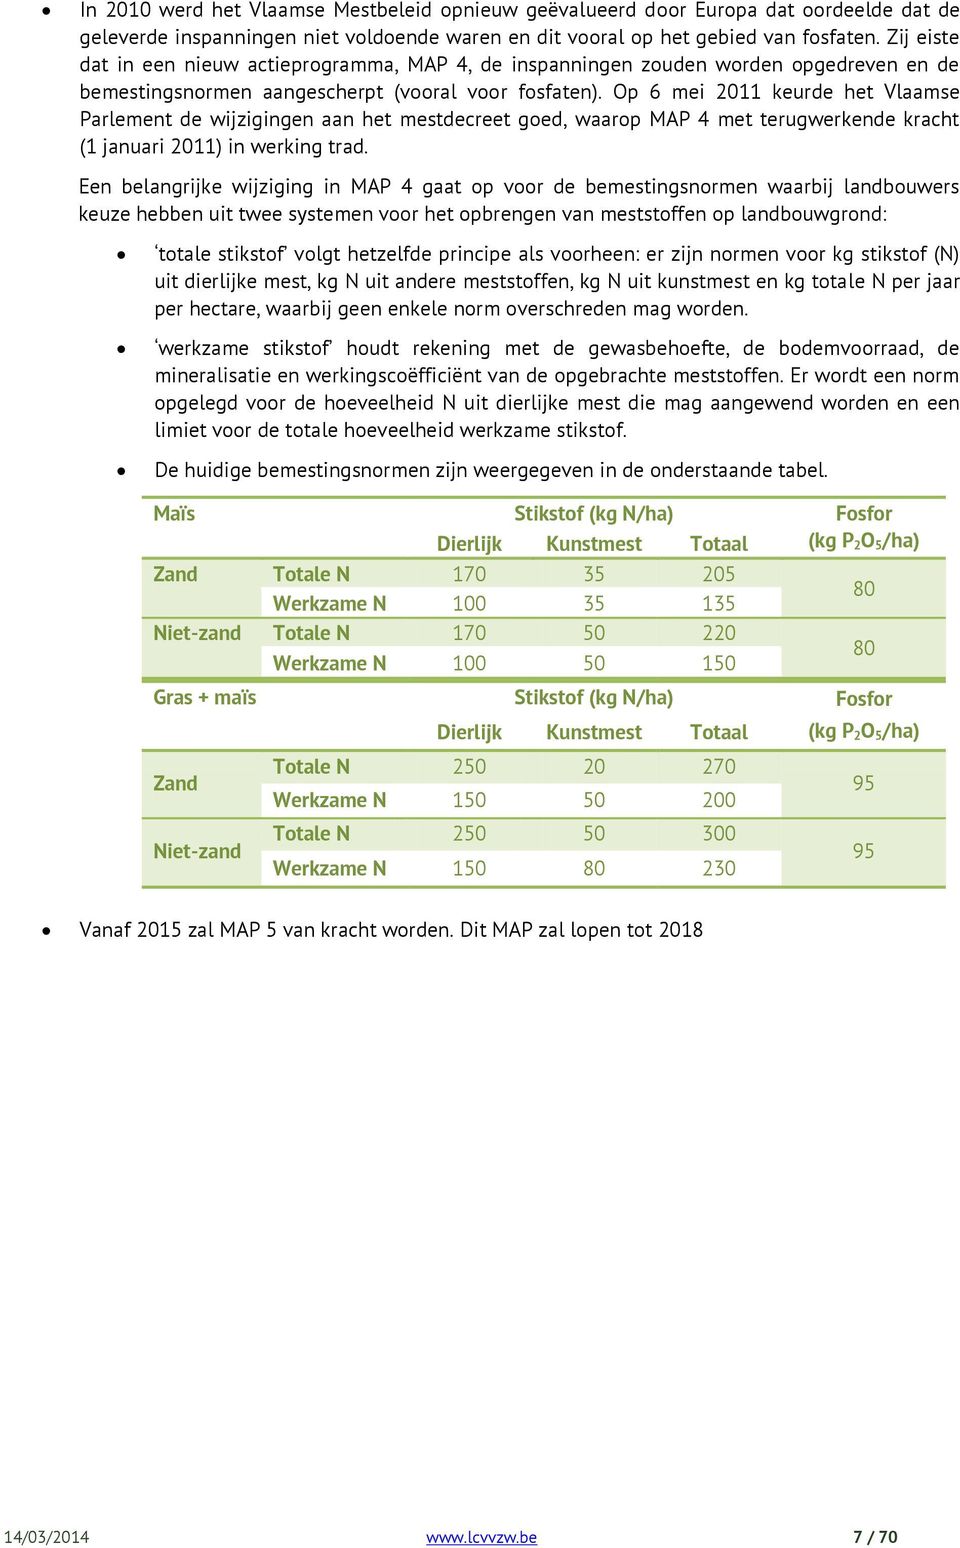 Op 6 mei 2011 keurde het Vlaamse Parlement de wijzigingen aan het mestdecreet goed, waarop MAP 4 met terugwerkende kracht (1 januari 2011) in werking trad.